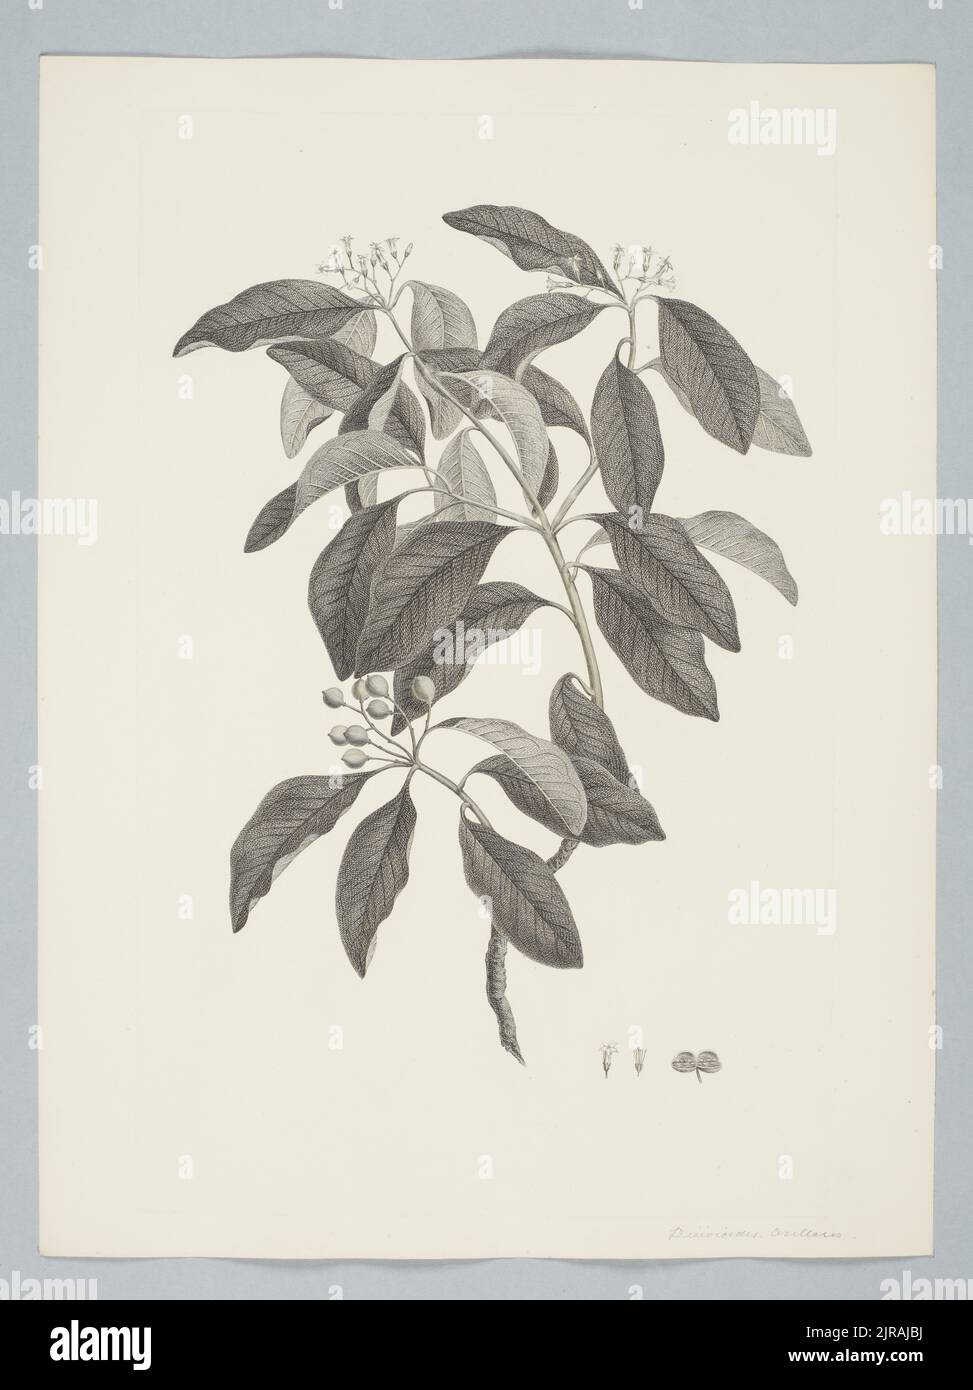 Pittosporum ferrugineum W.T. Aiton, by Sydney Parkinson. Gift of the British Museum, 1895. Stock Photo